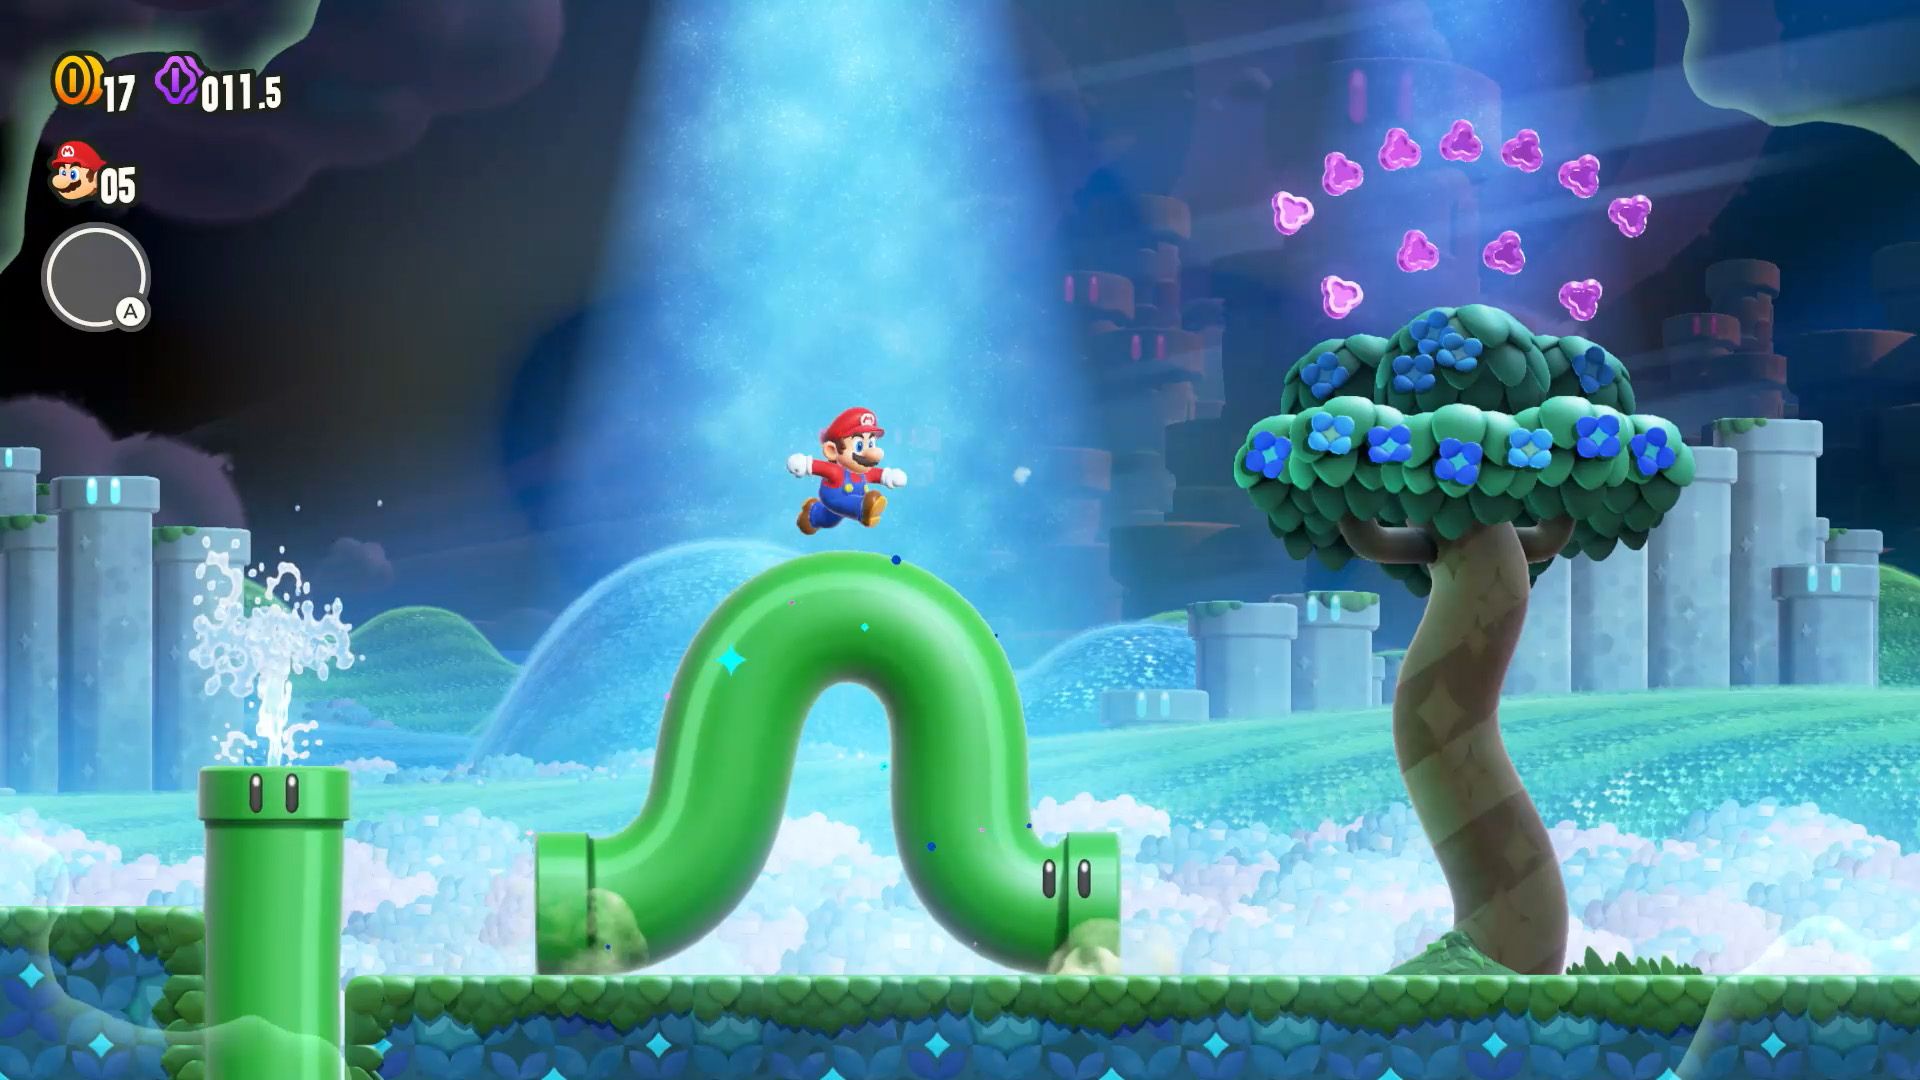  Чудесное событие происходит в Super Mario Bros Wonder